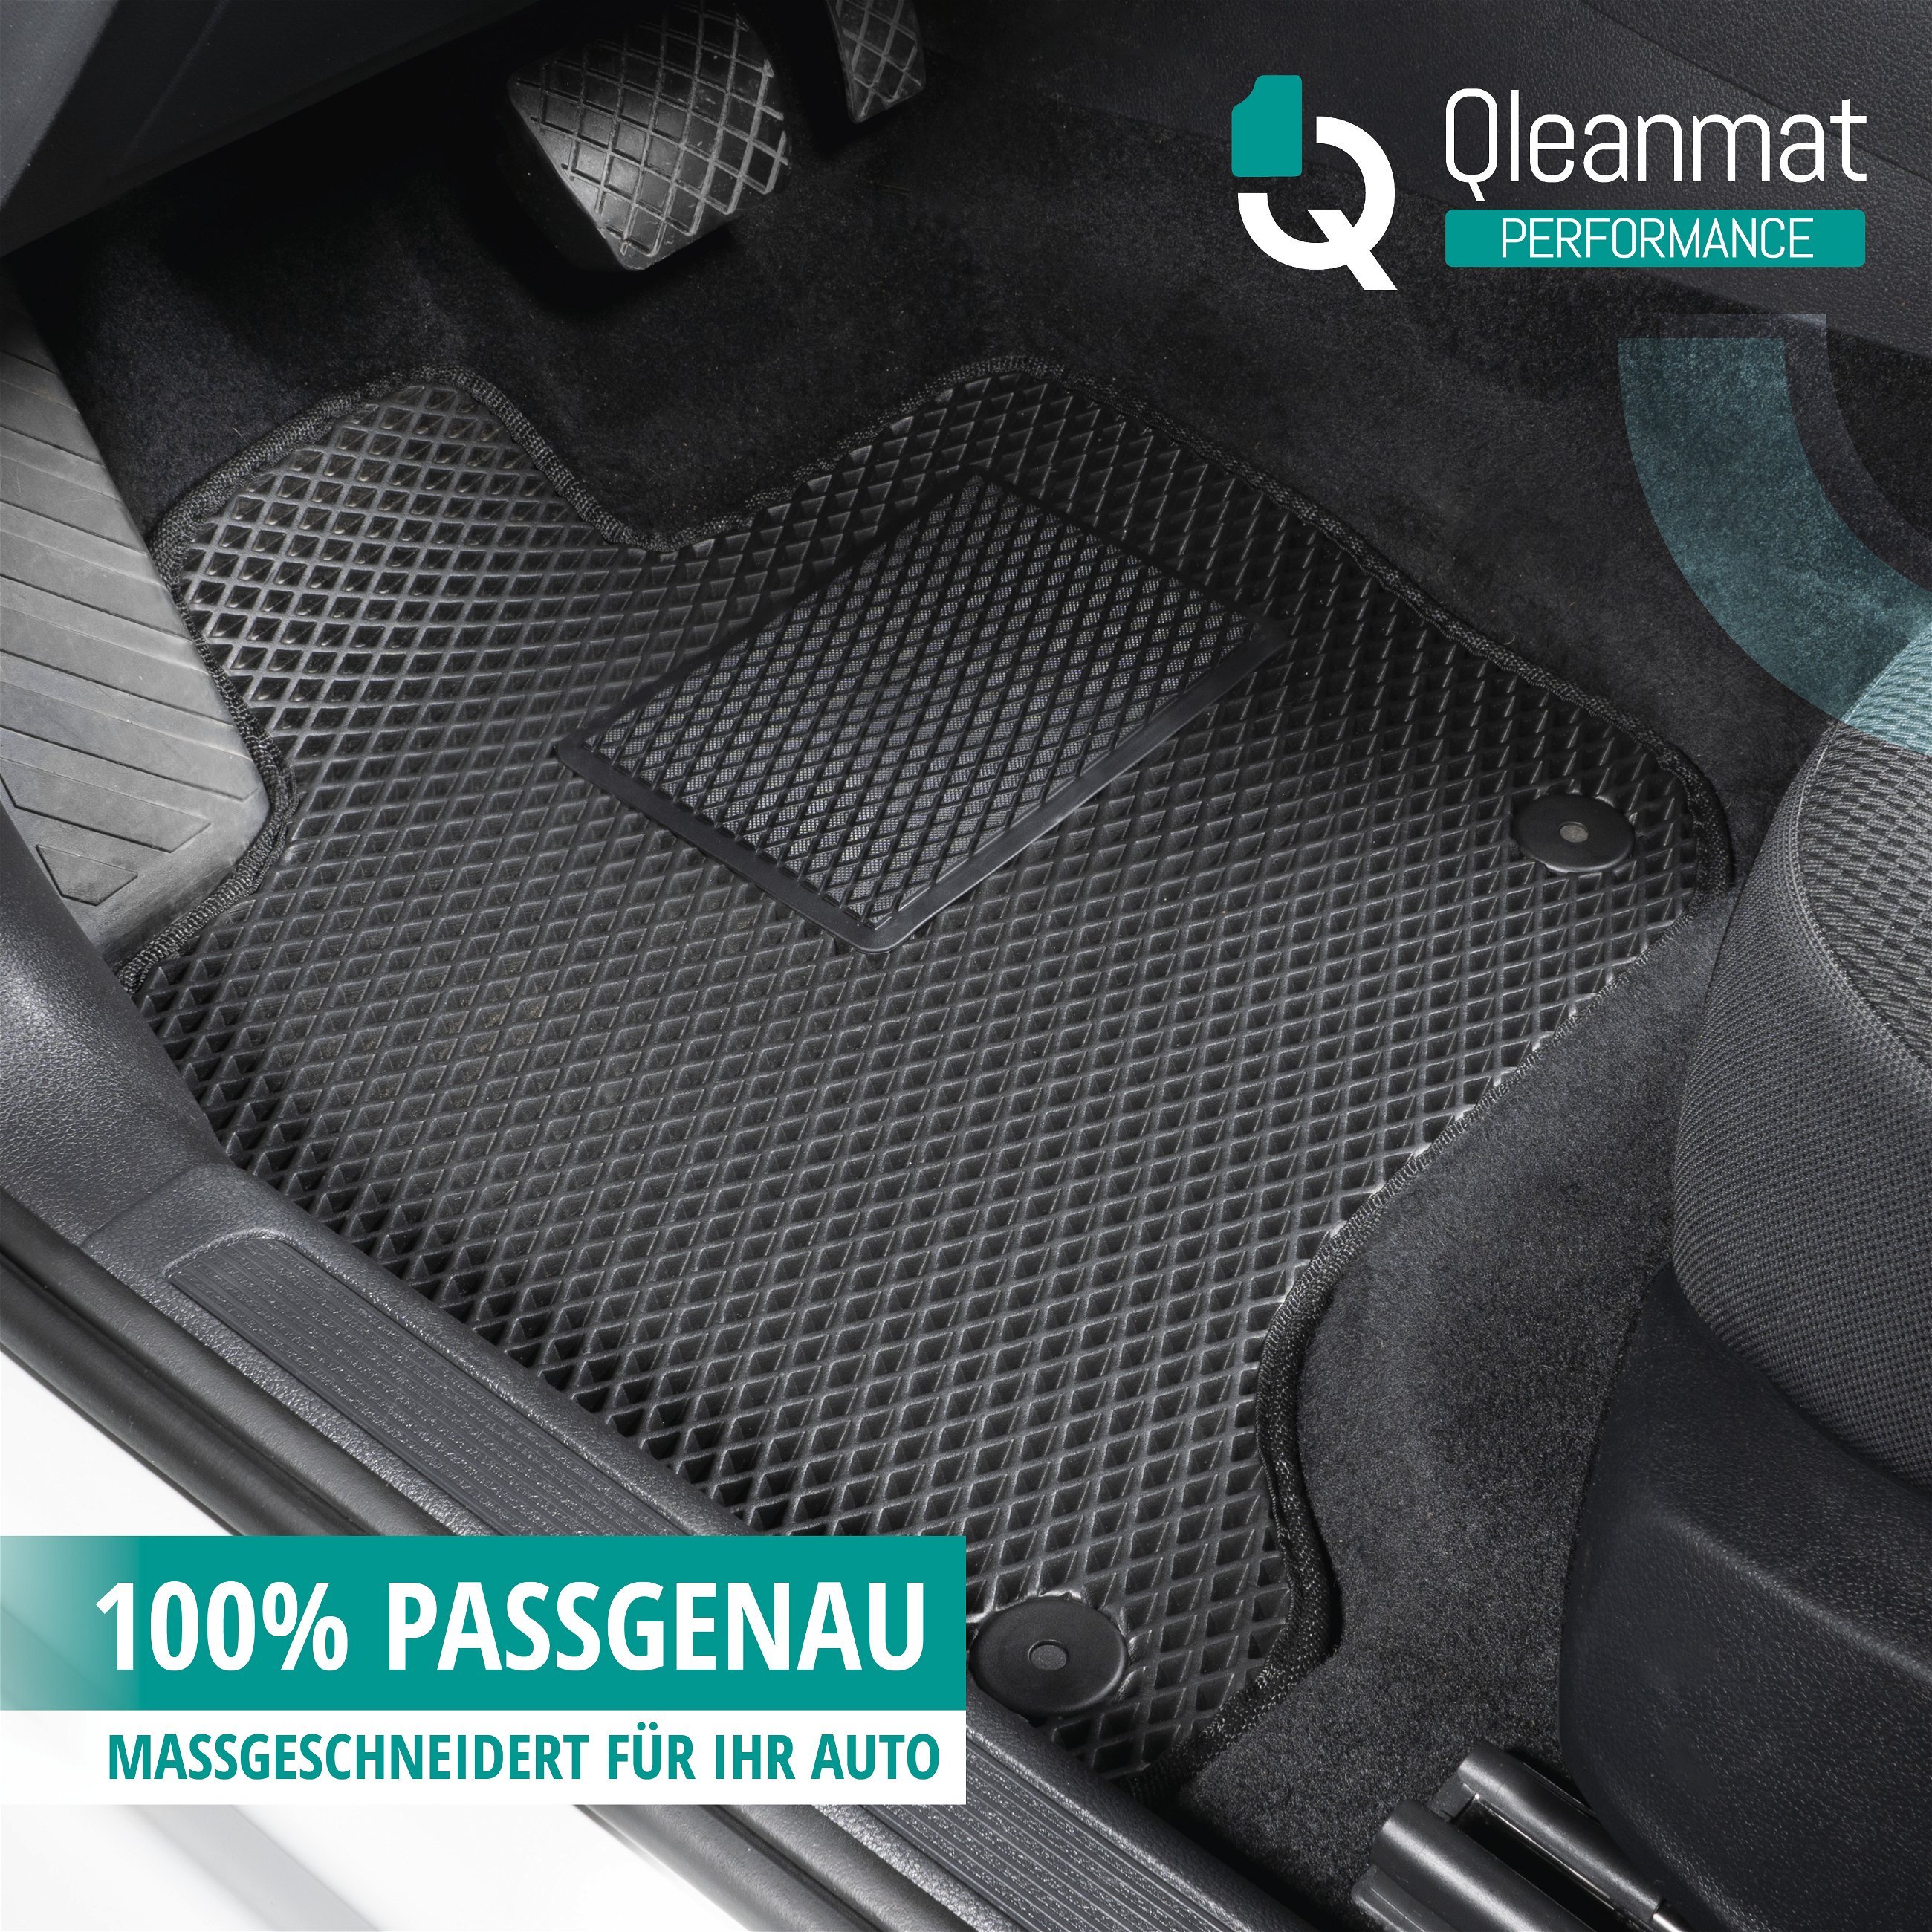 Gummimatten Qlean Mats für VW Touran 05/2010-05/2015, 5-Sitzer